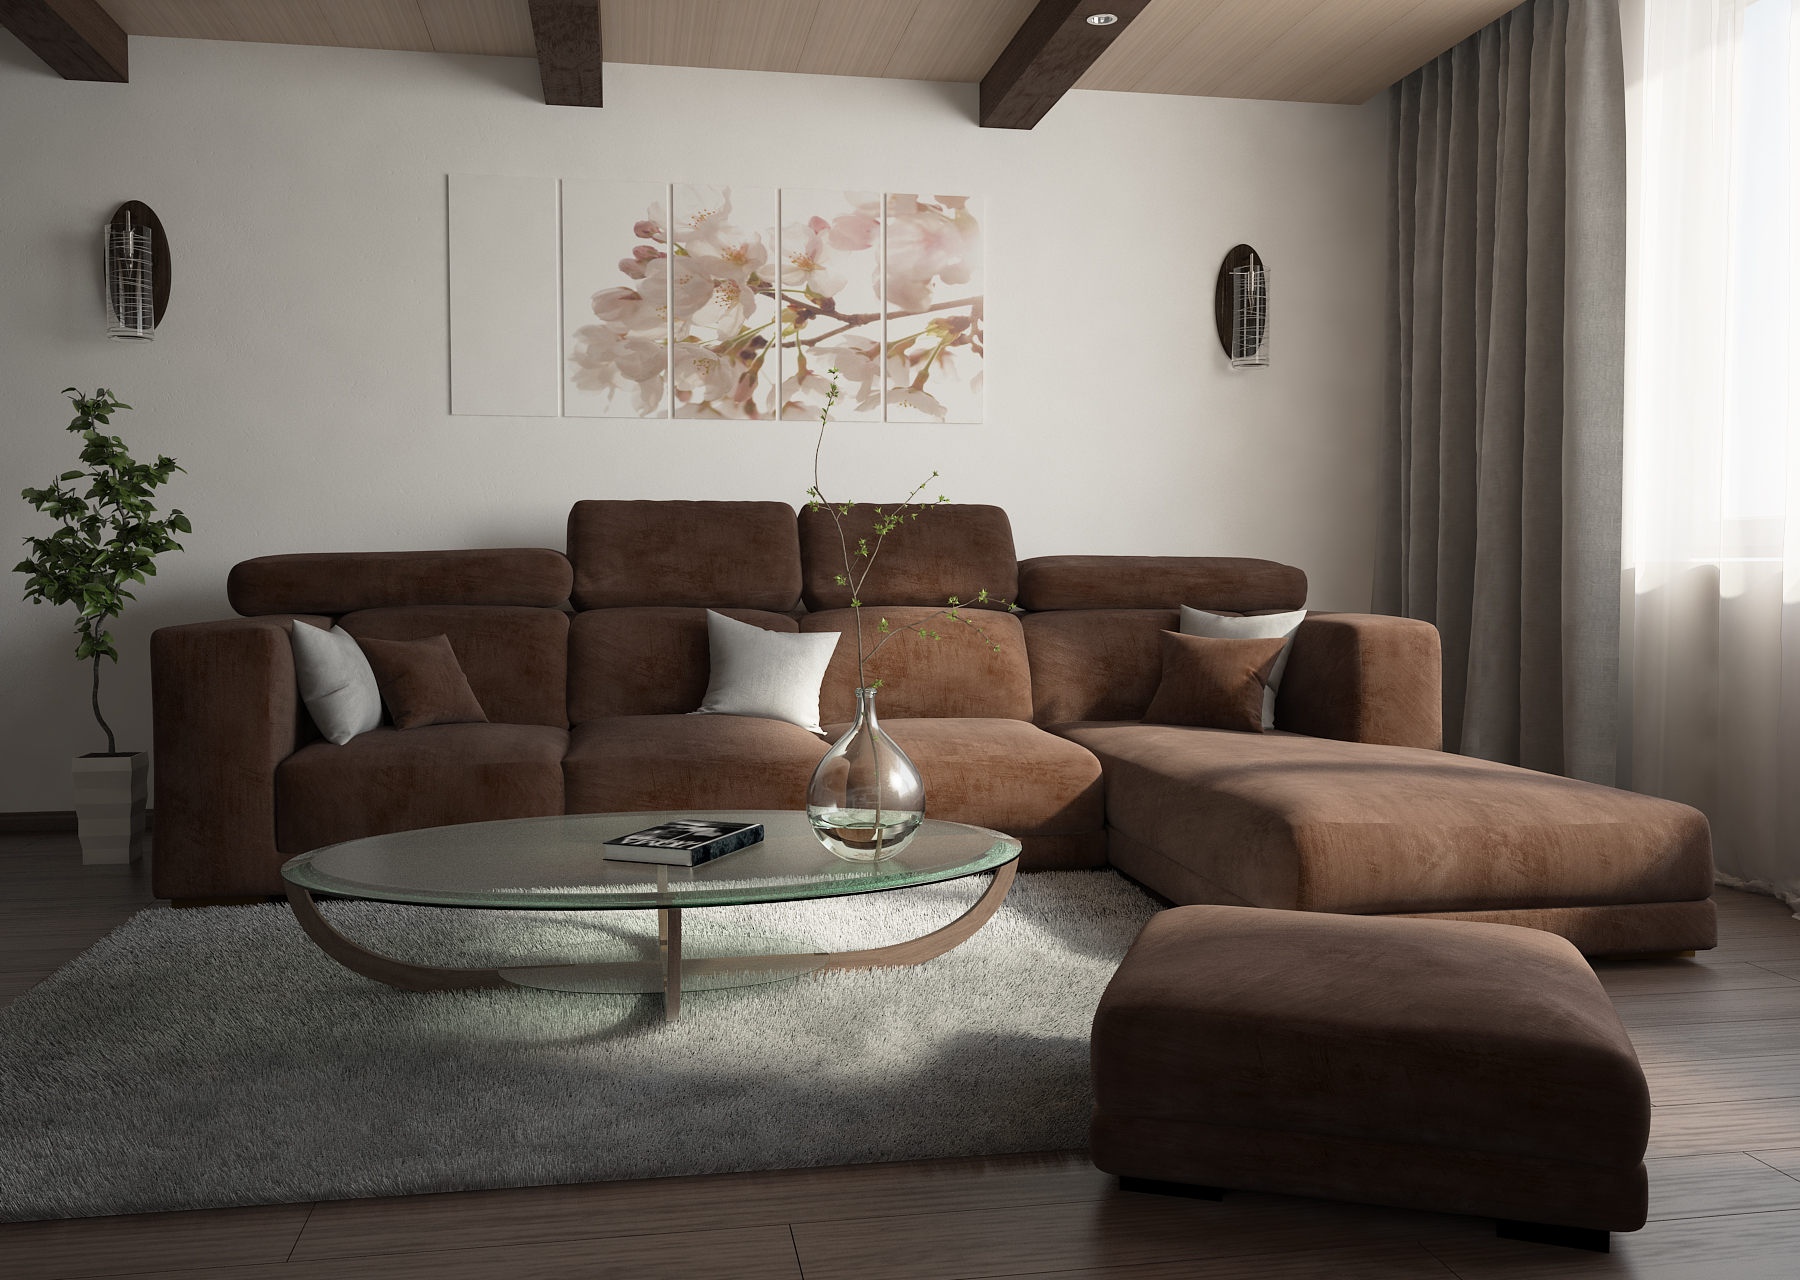 Клотчнывый диван в интерьере гостиной